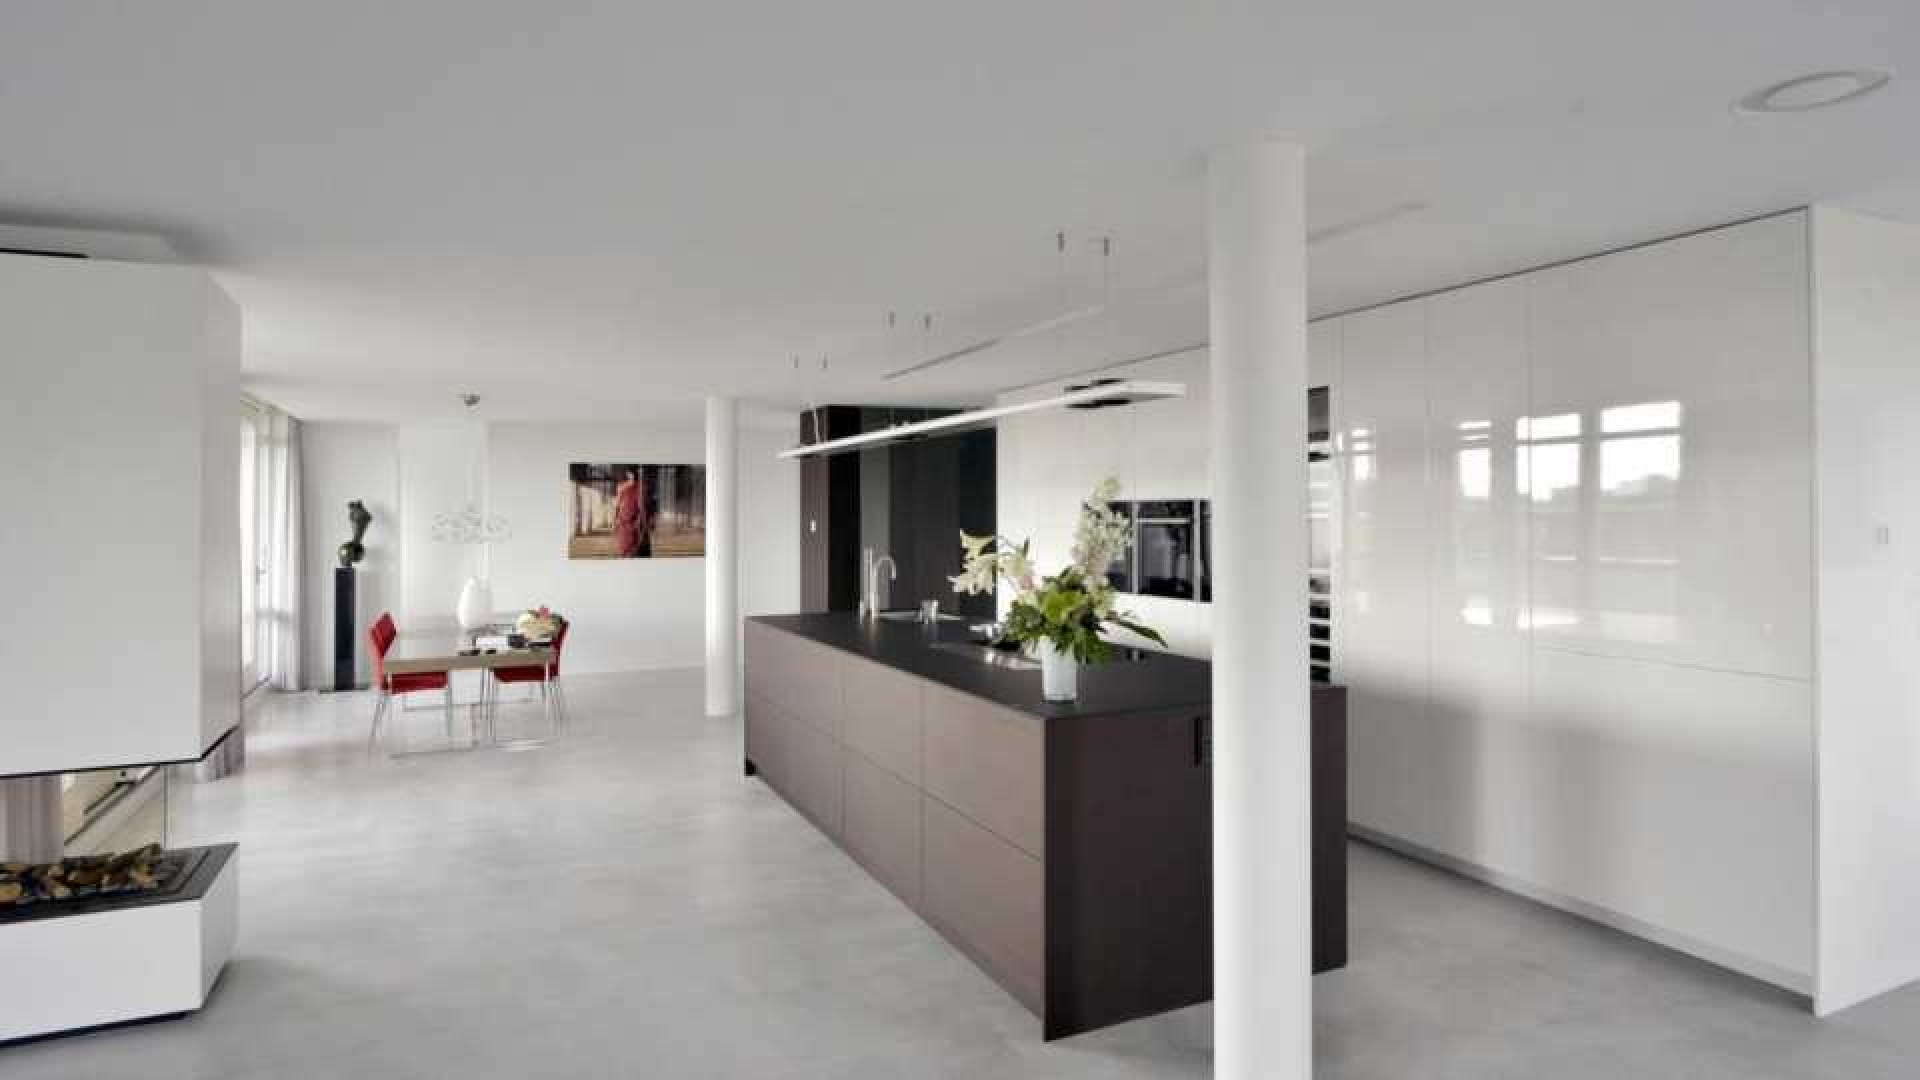 Binnenkijken in het waanzinnig luxe penthouse van Nederlands Elftal speler Denzel Dumfries. Zie foto's 6